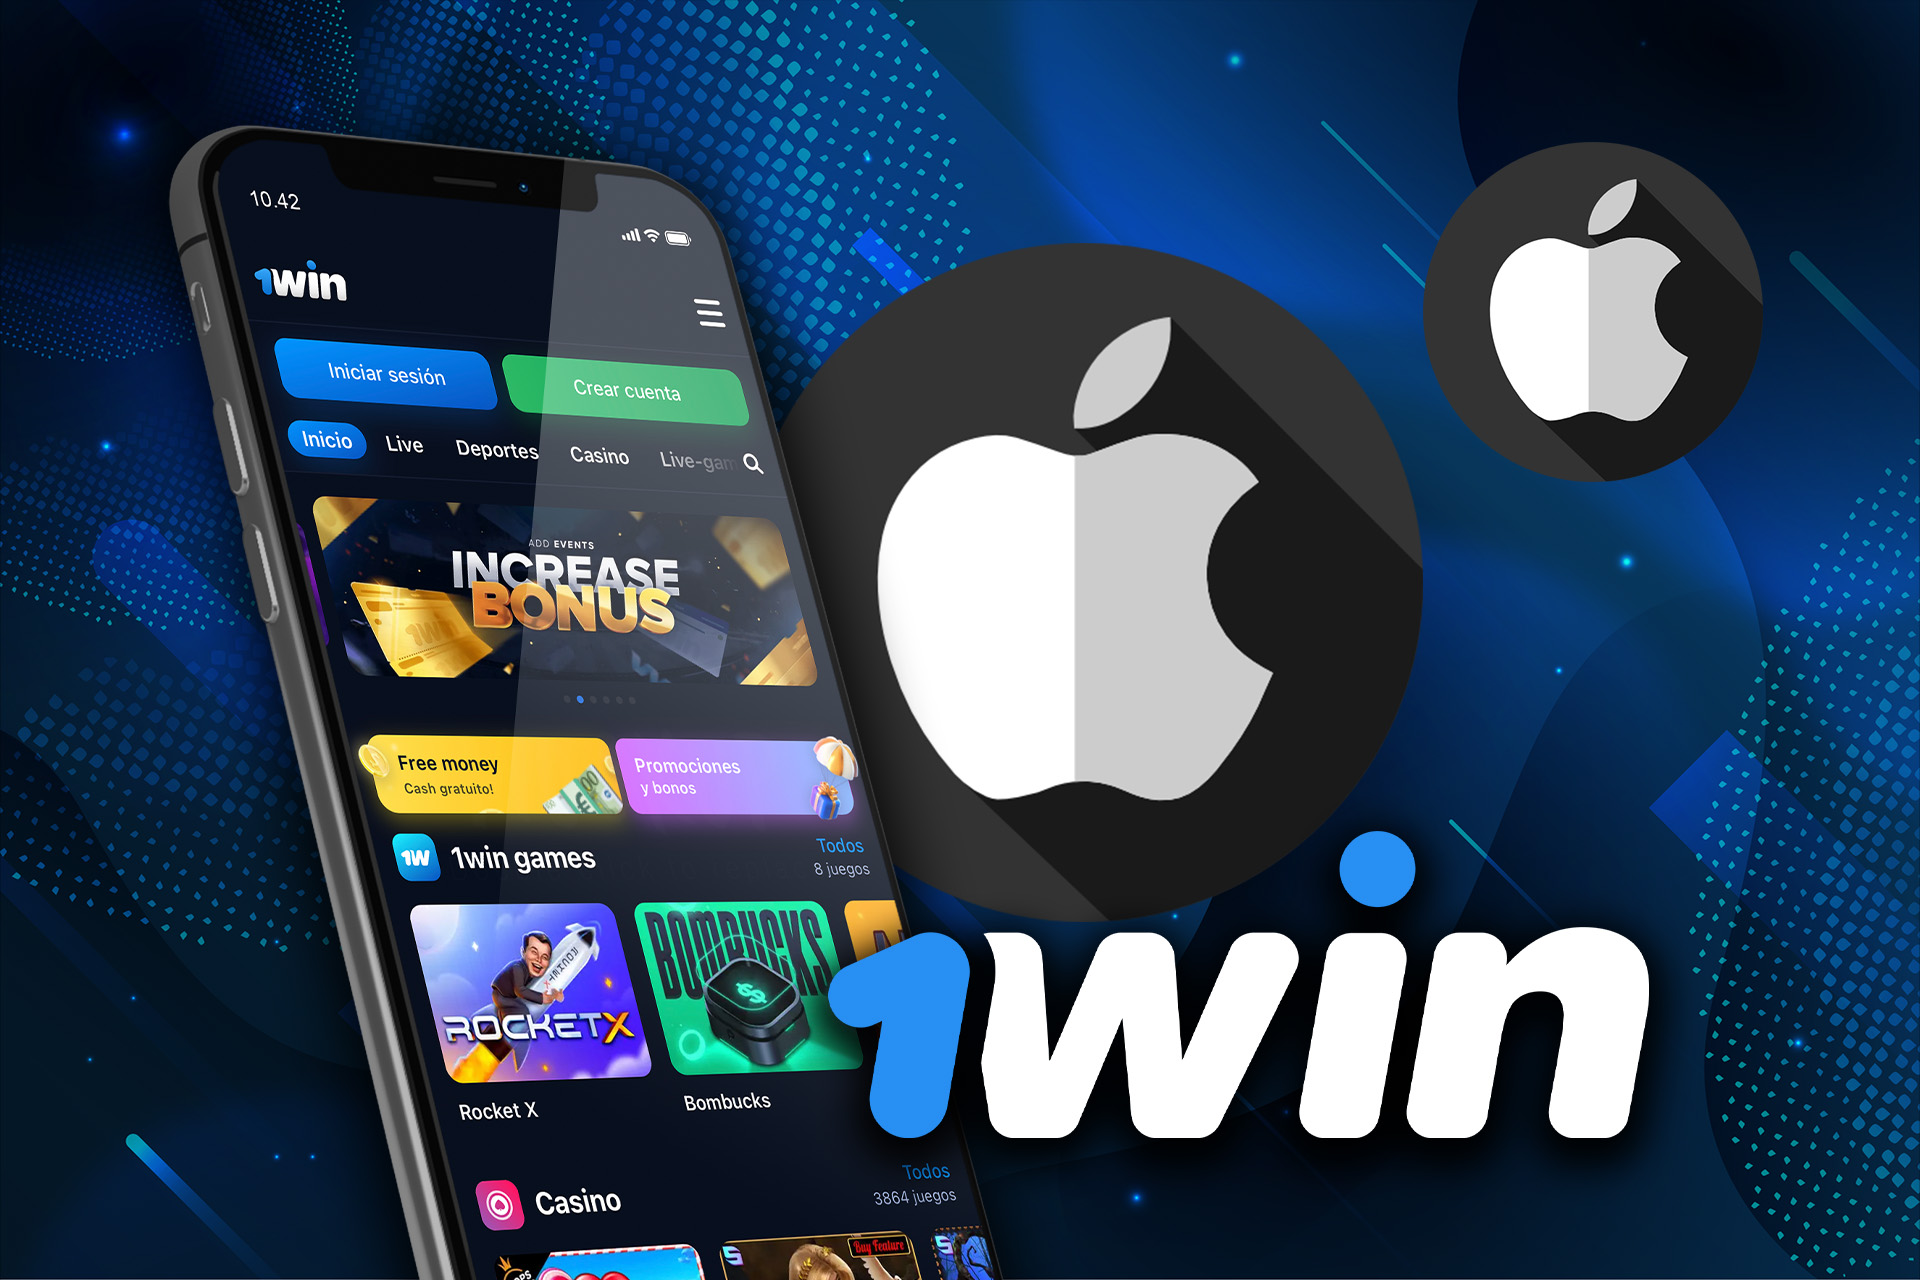 1win ha desarrollado una aplicación para IPhones que puedes descargar desde el sitio web oficial.